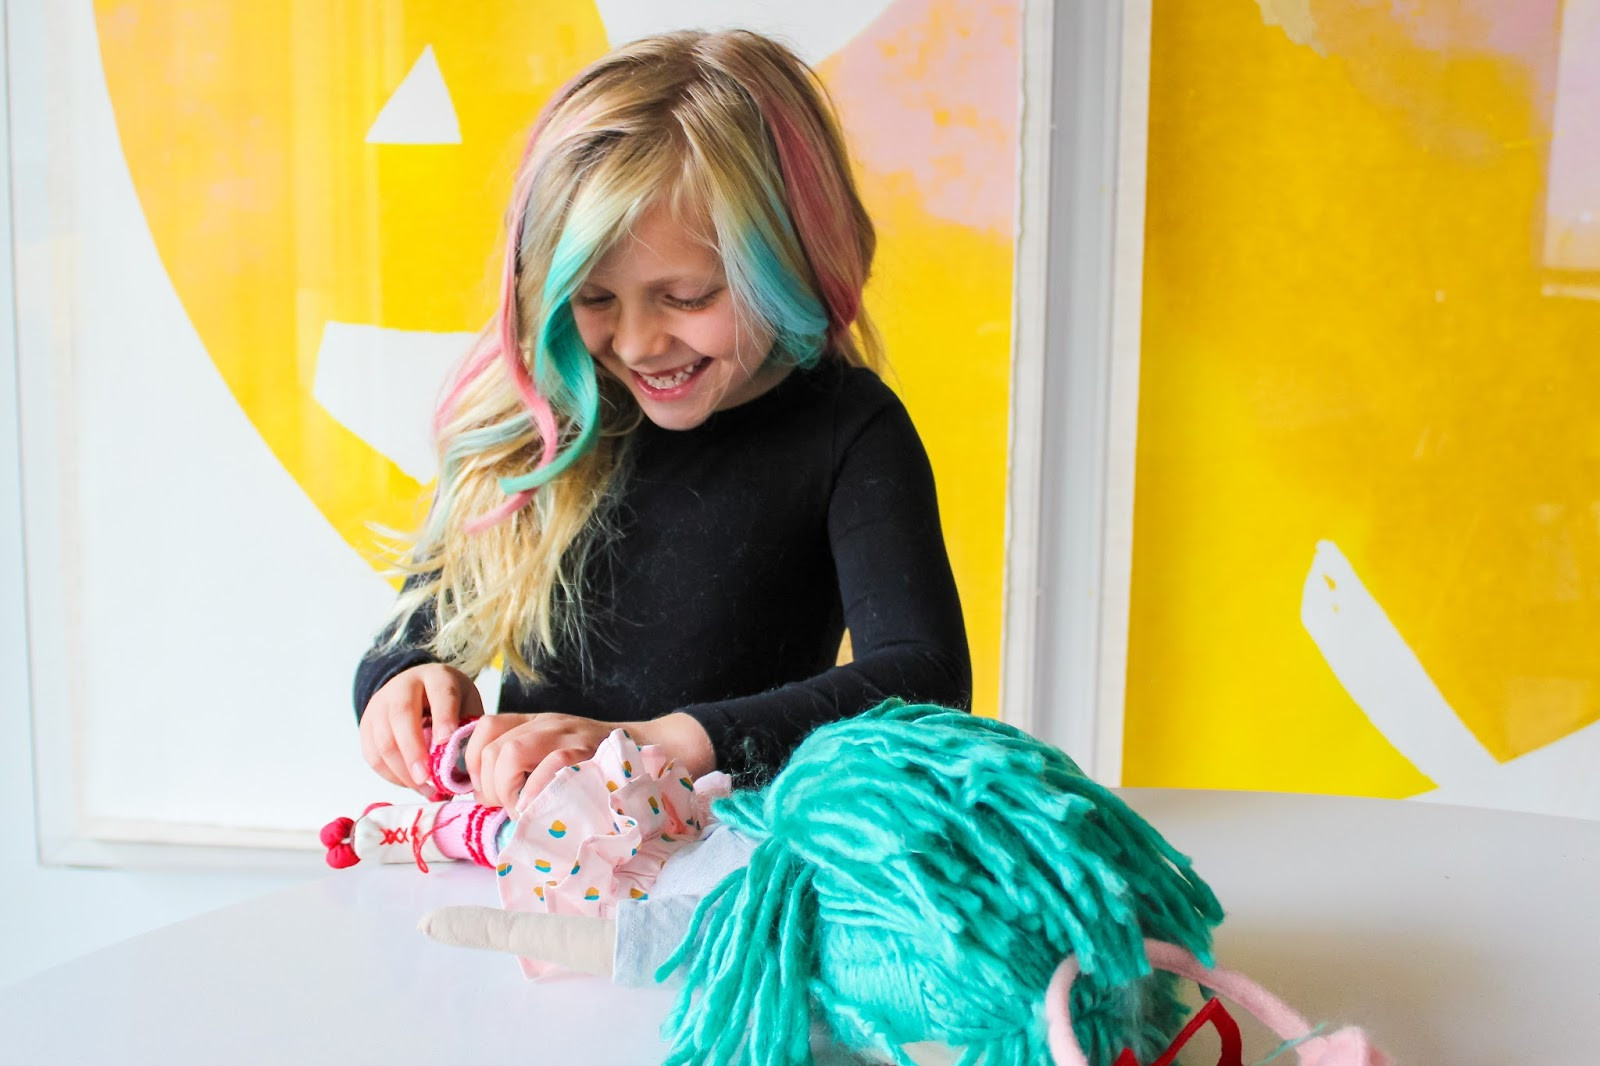 Best ideas about DIY Rainbow Hair
. Save or Pin DIY Rainbow Hair Chalk Now.